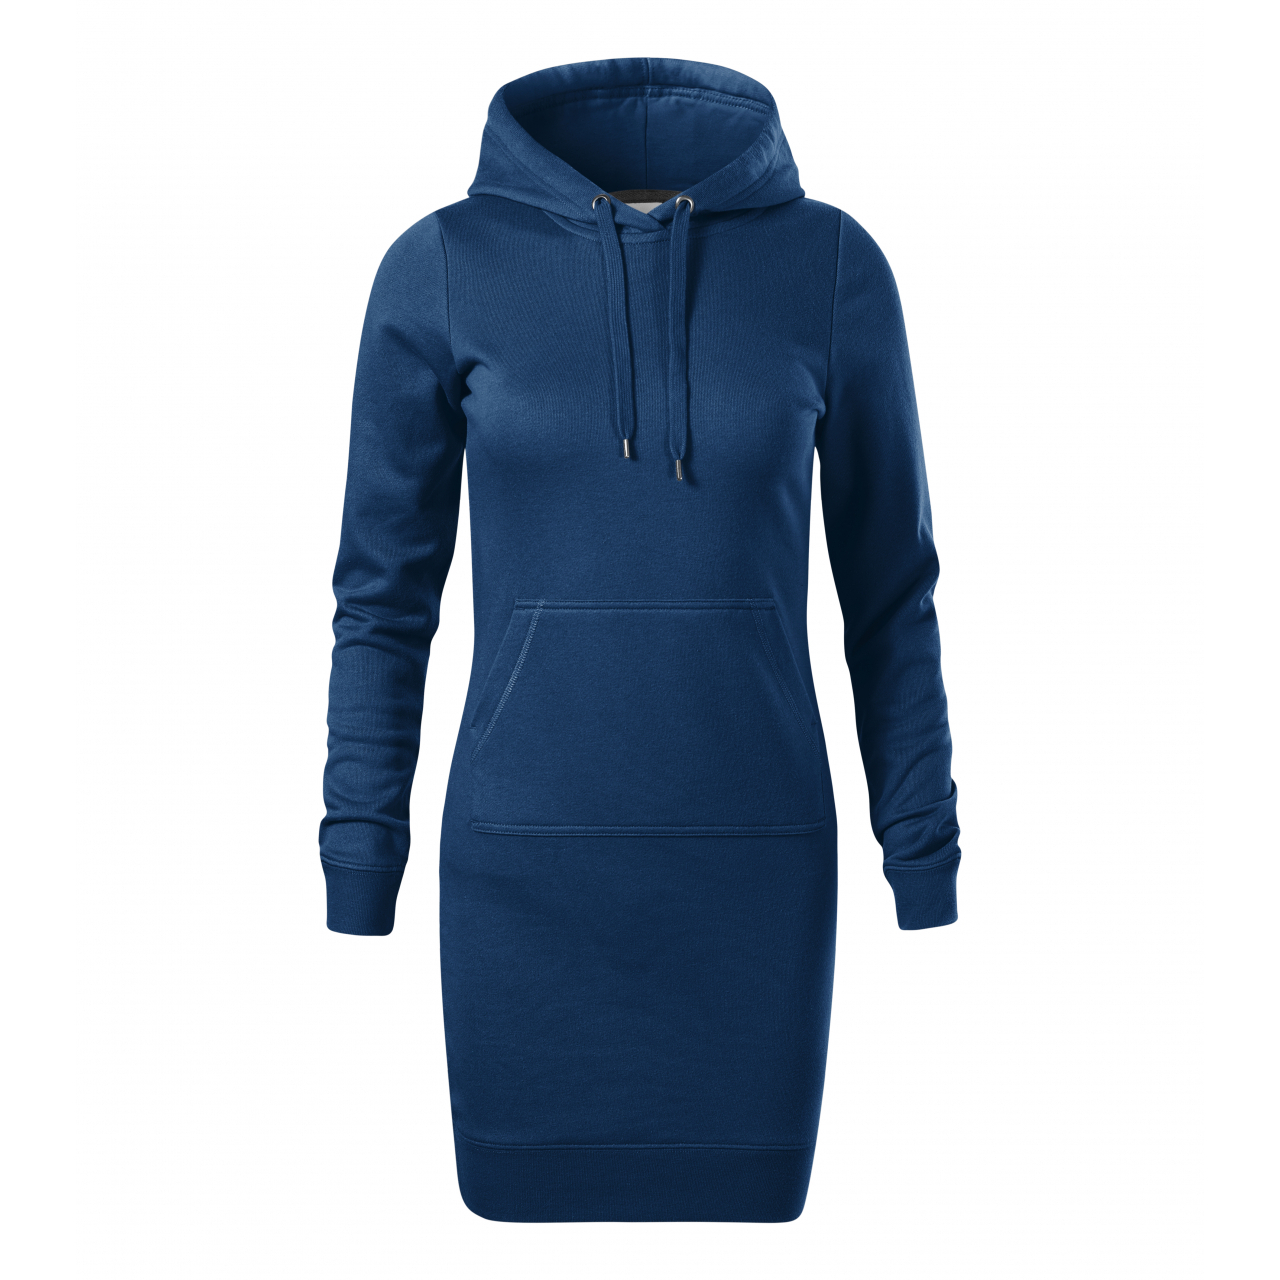 Šaty dámské Malfini Snap - tmavě modré, L